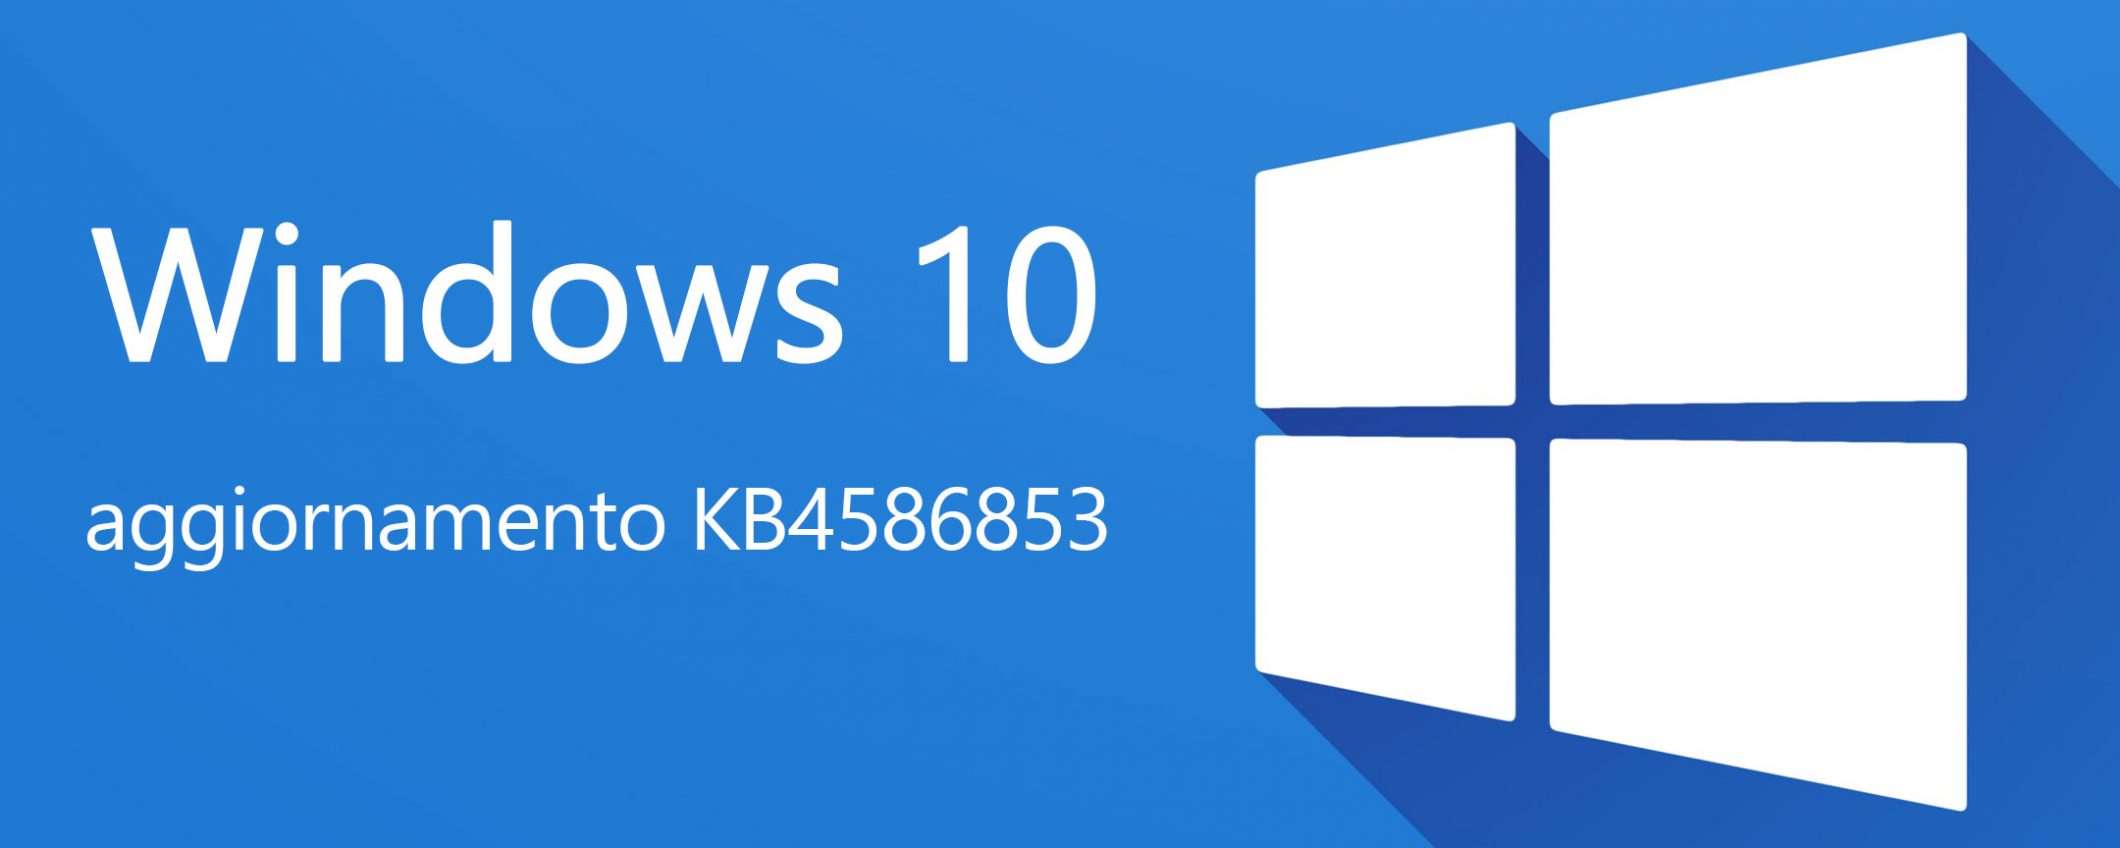 Windows 10, aggiornamento KB4586853 per 20H1-20H2